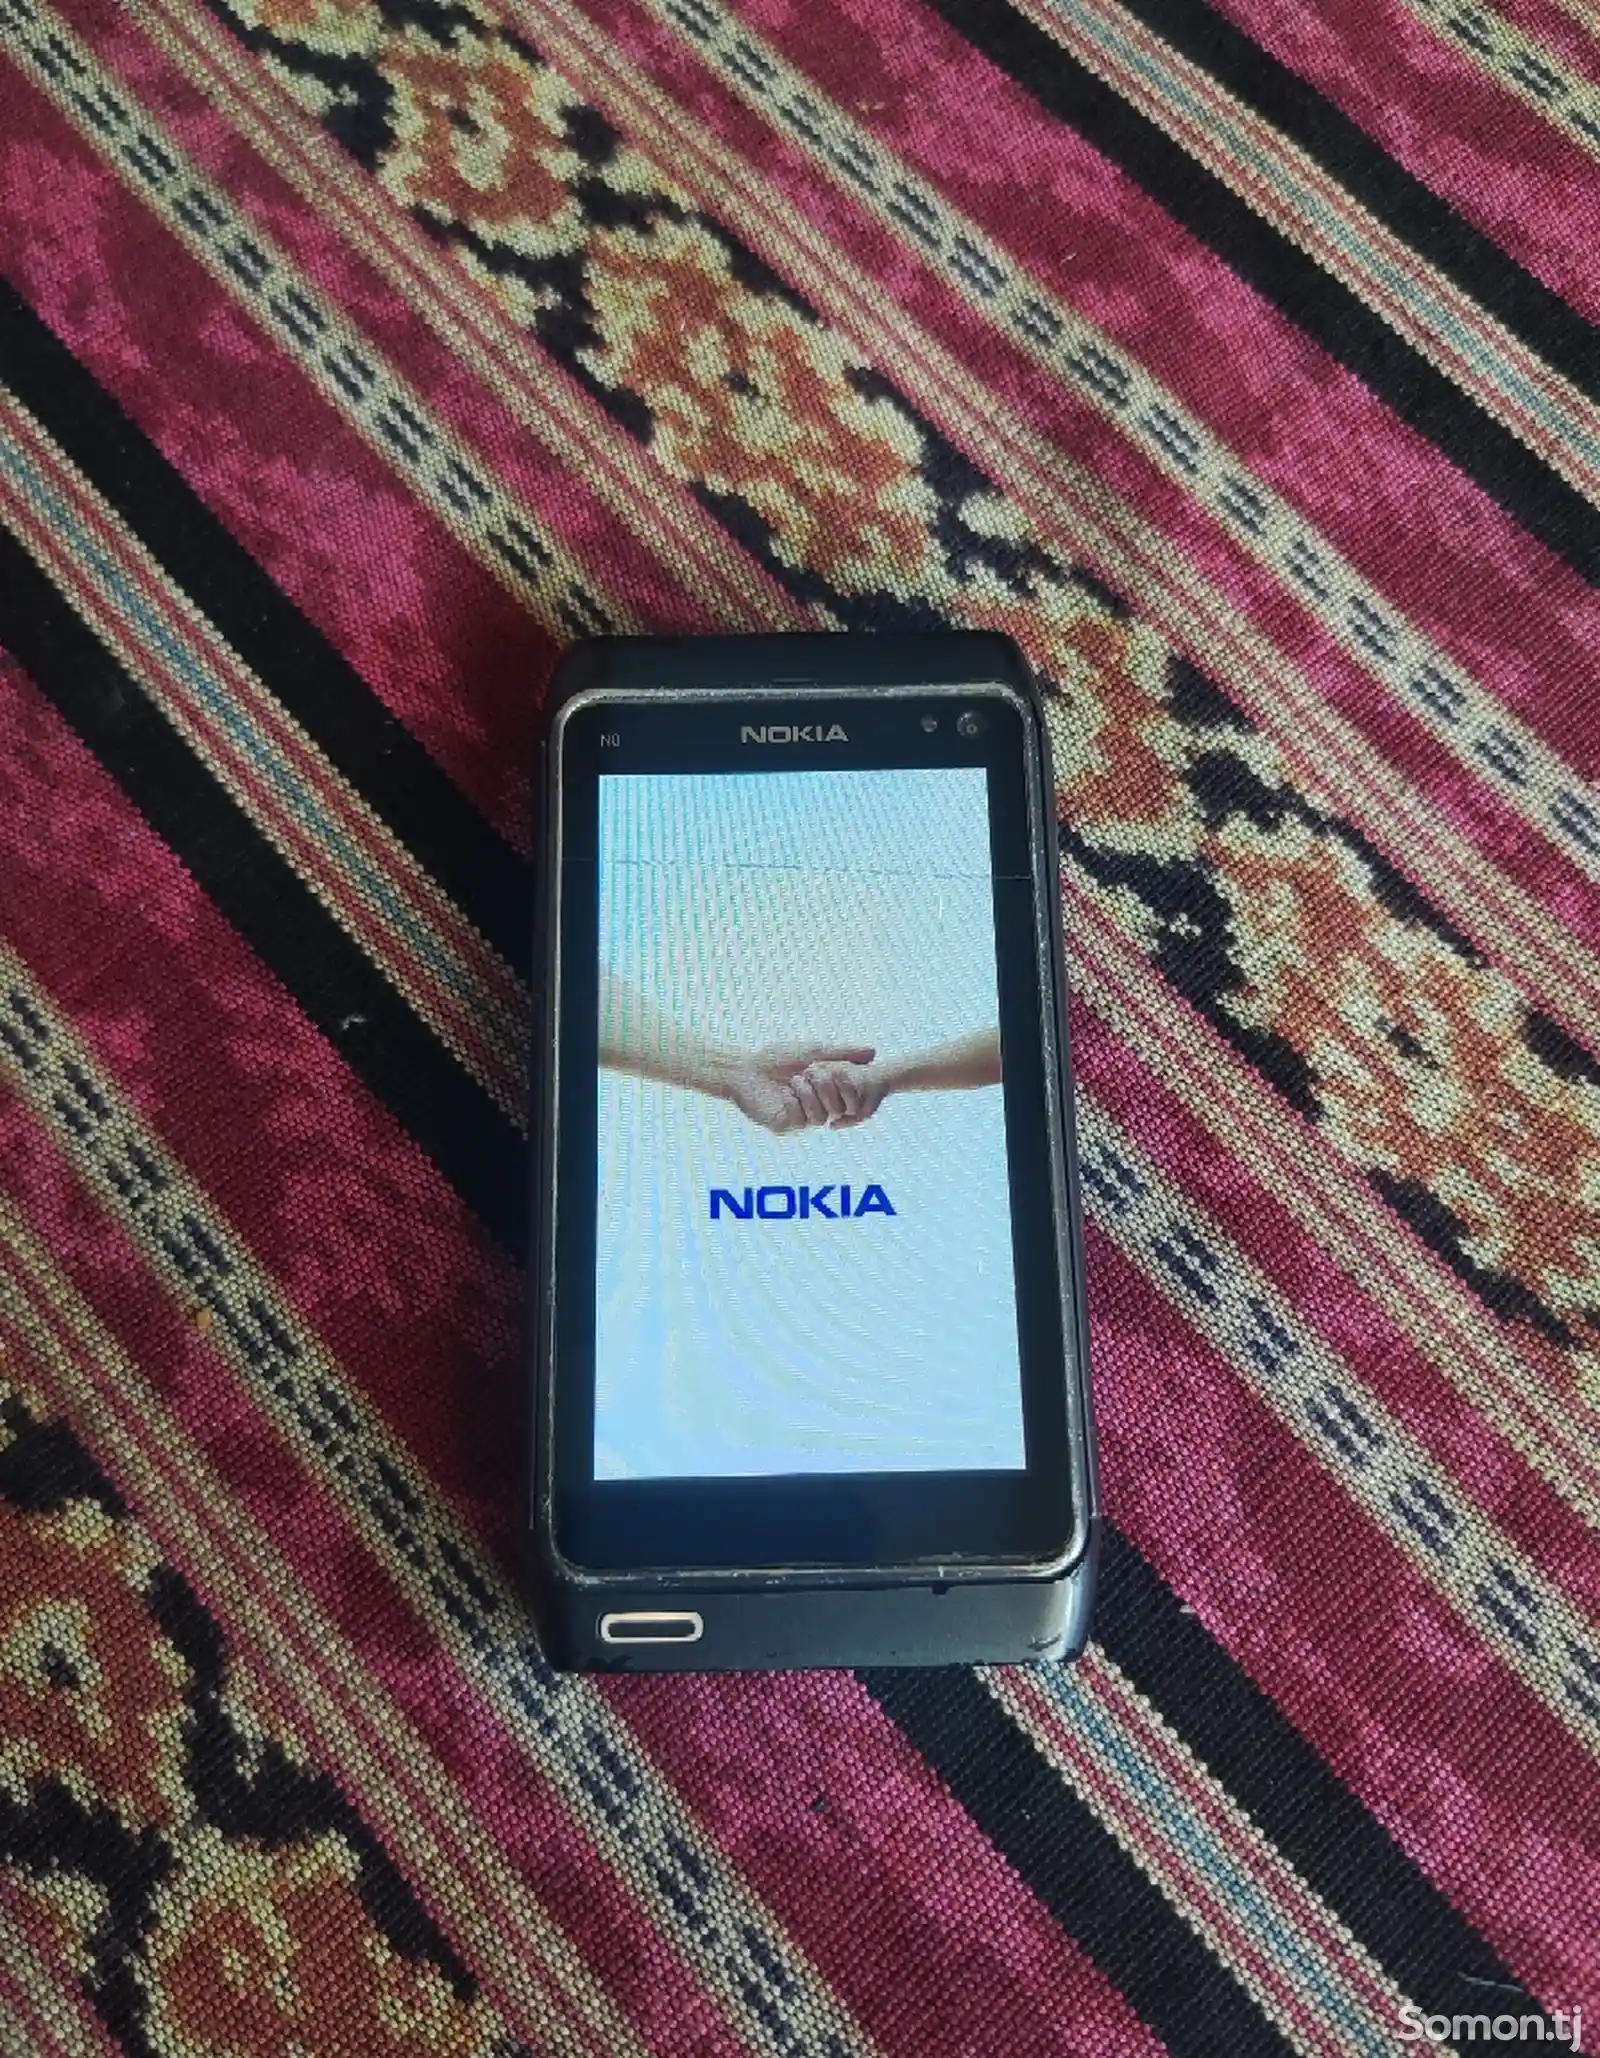 Nokia N8-1